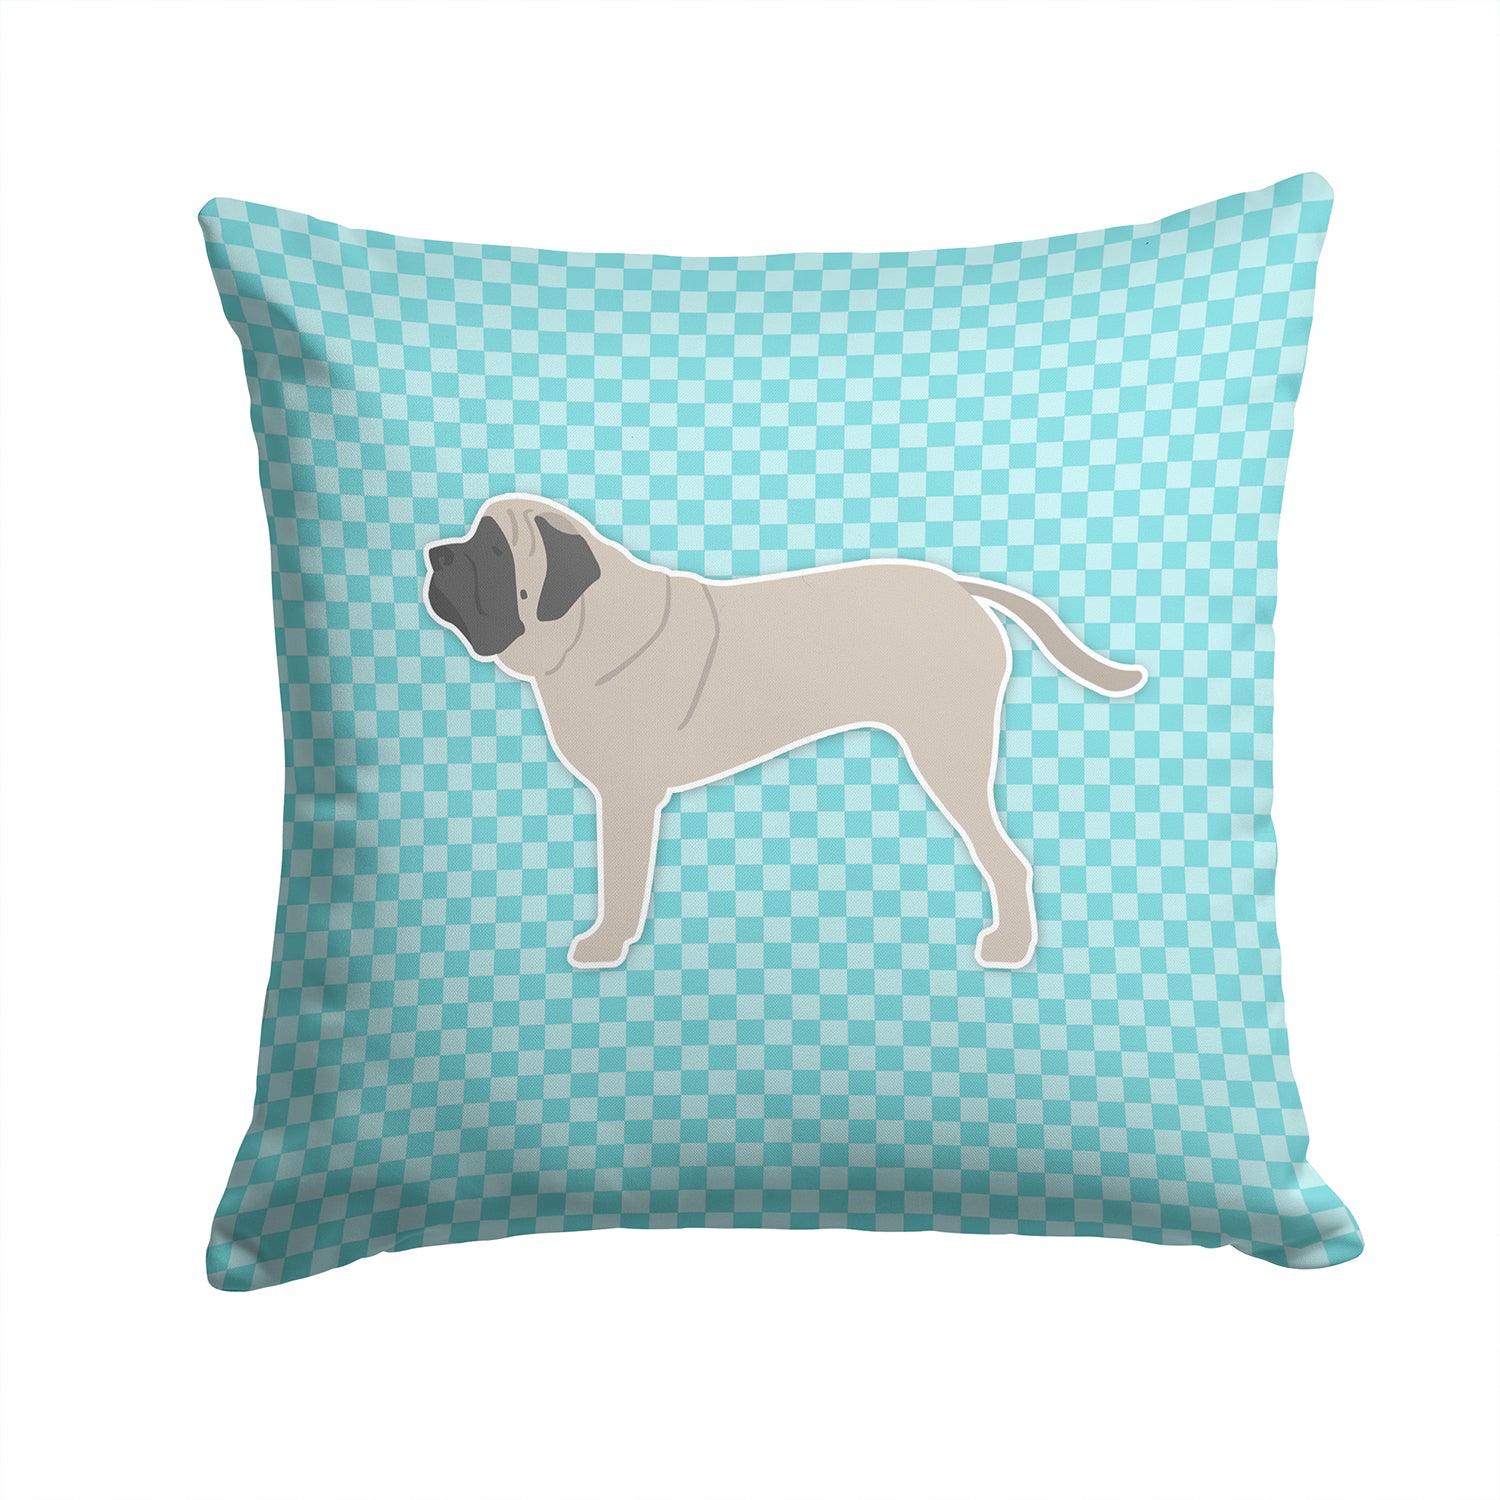 English Mastiff Checkerboard Blue Fabric Decorative Pillow BB3756PW1414 - the-store.com